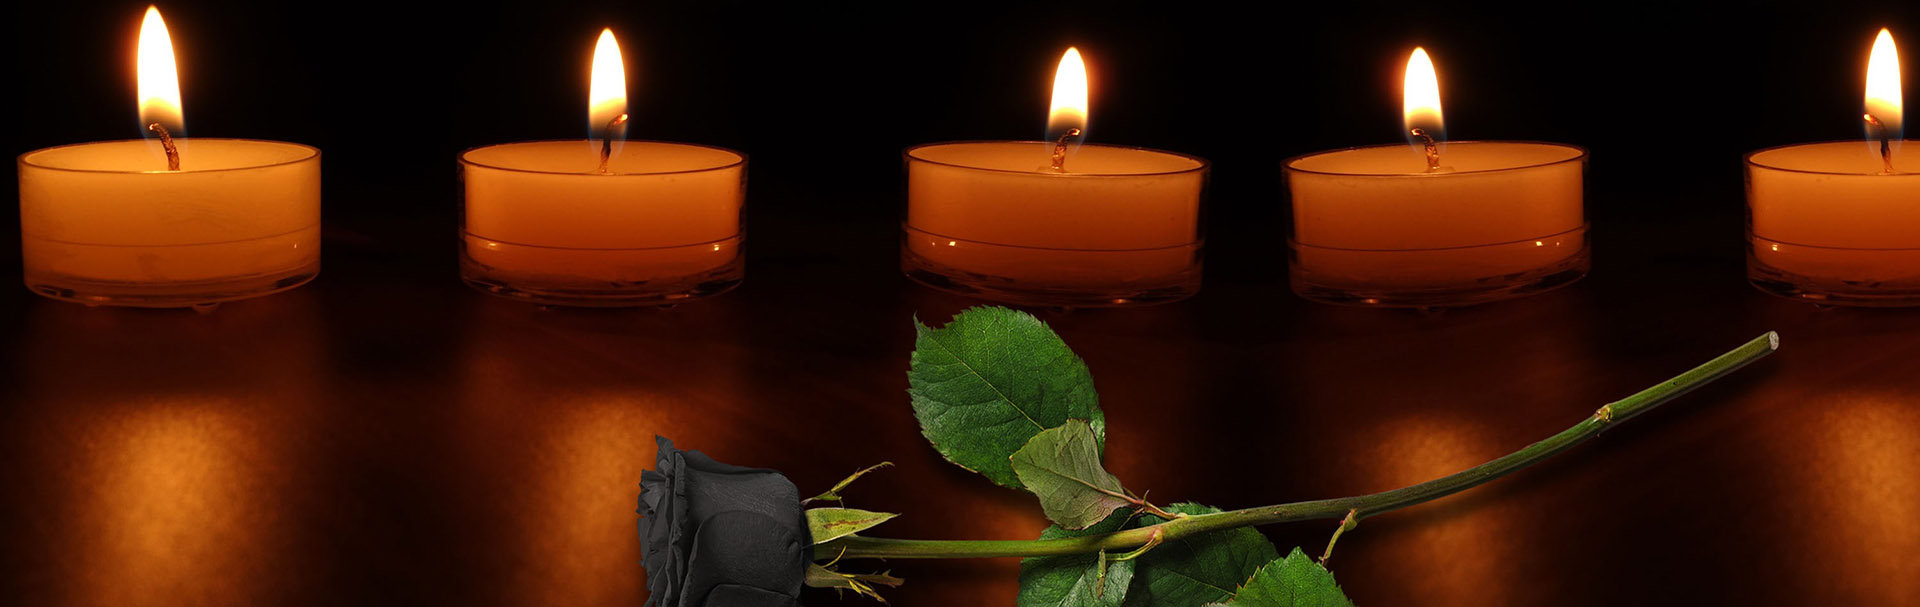 Заказ и доставка живых цветов на похороны «Роза Подолья»